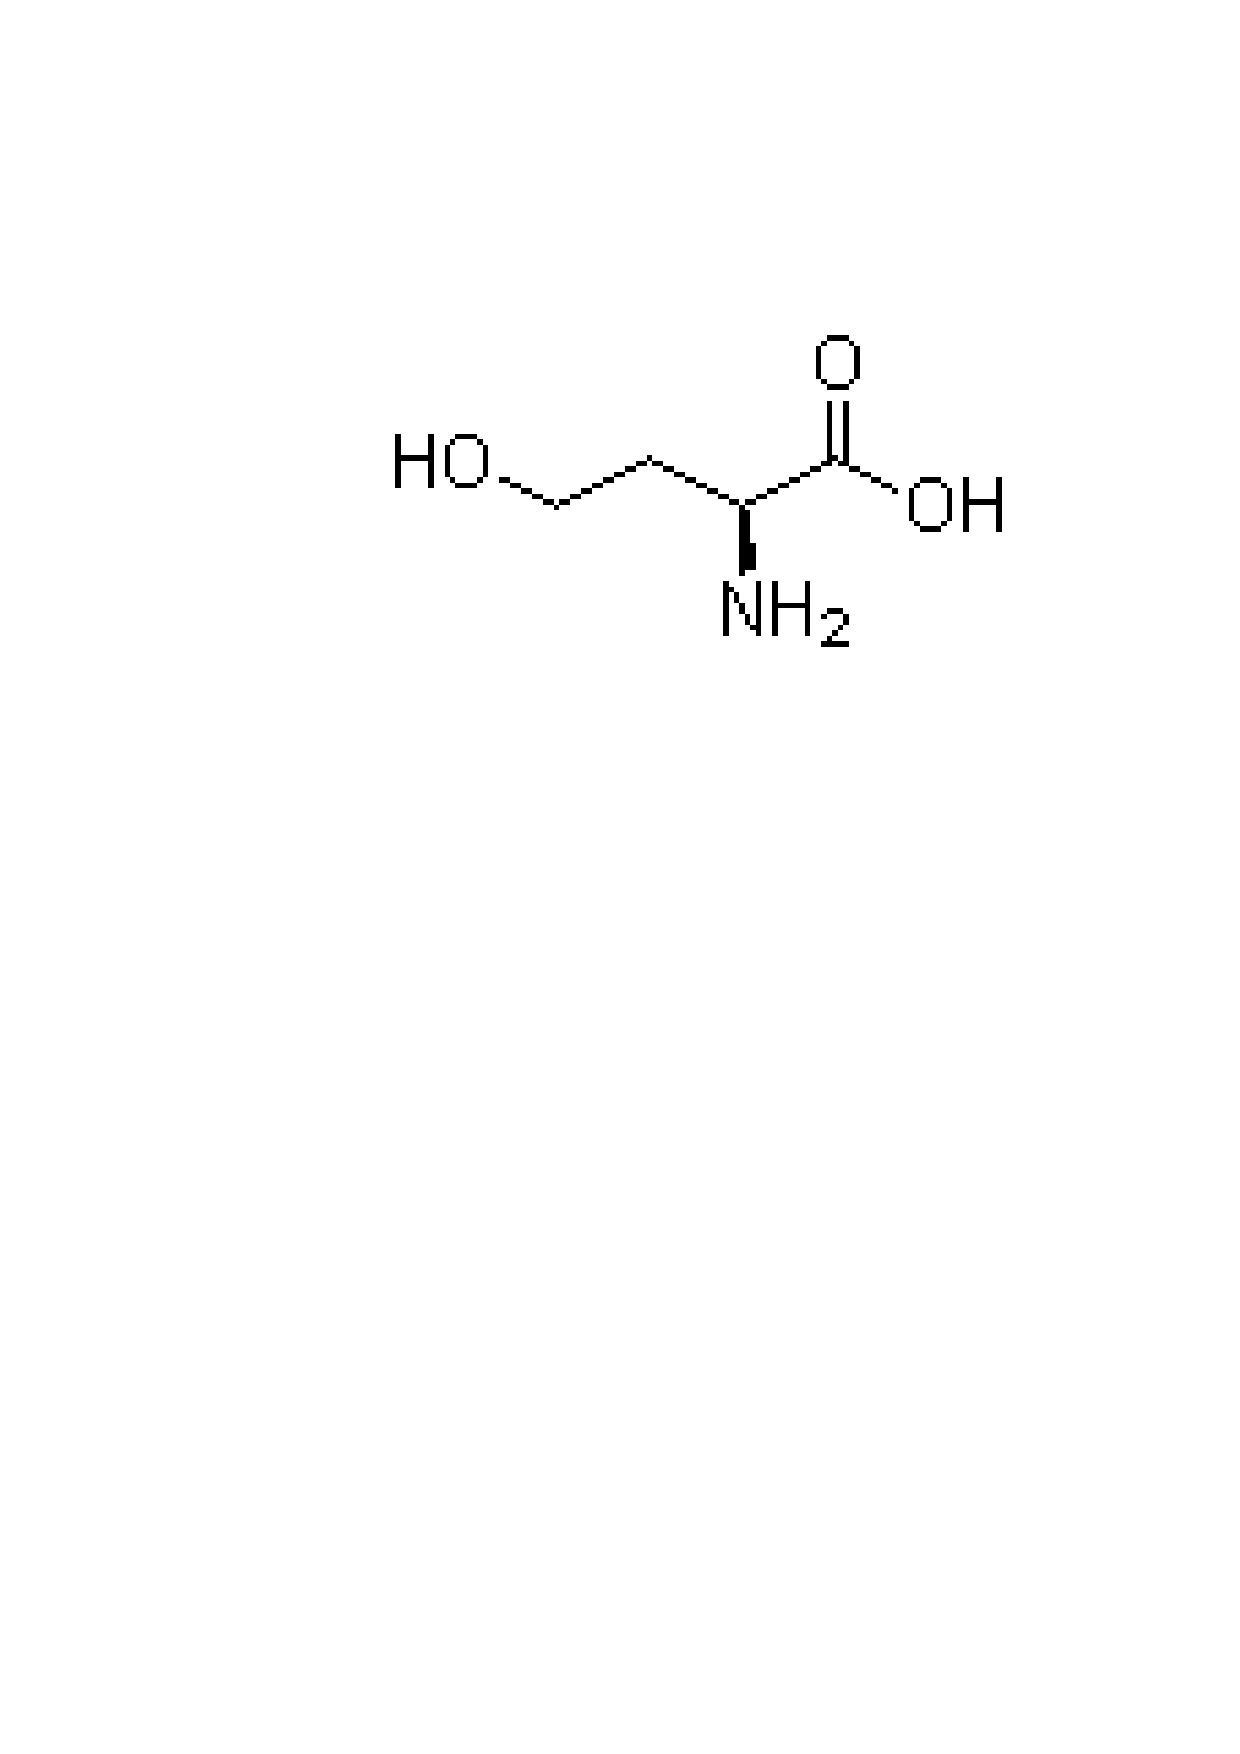 丝氨酸结构简式图片